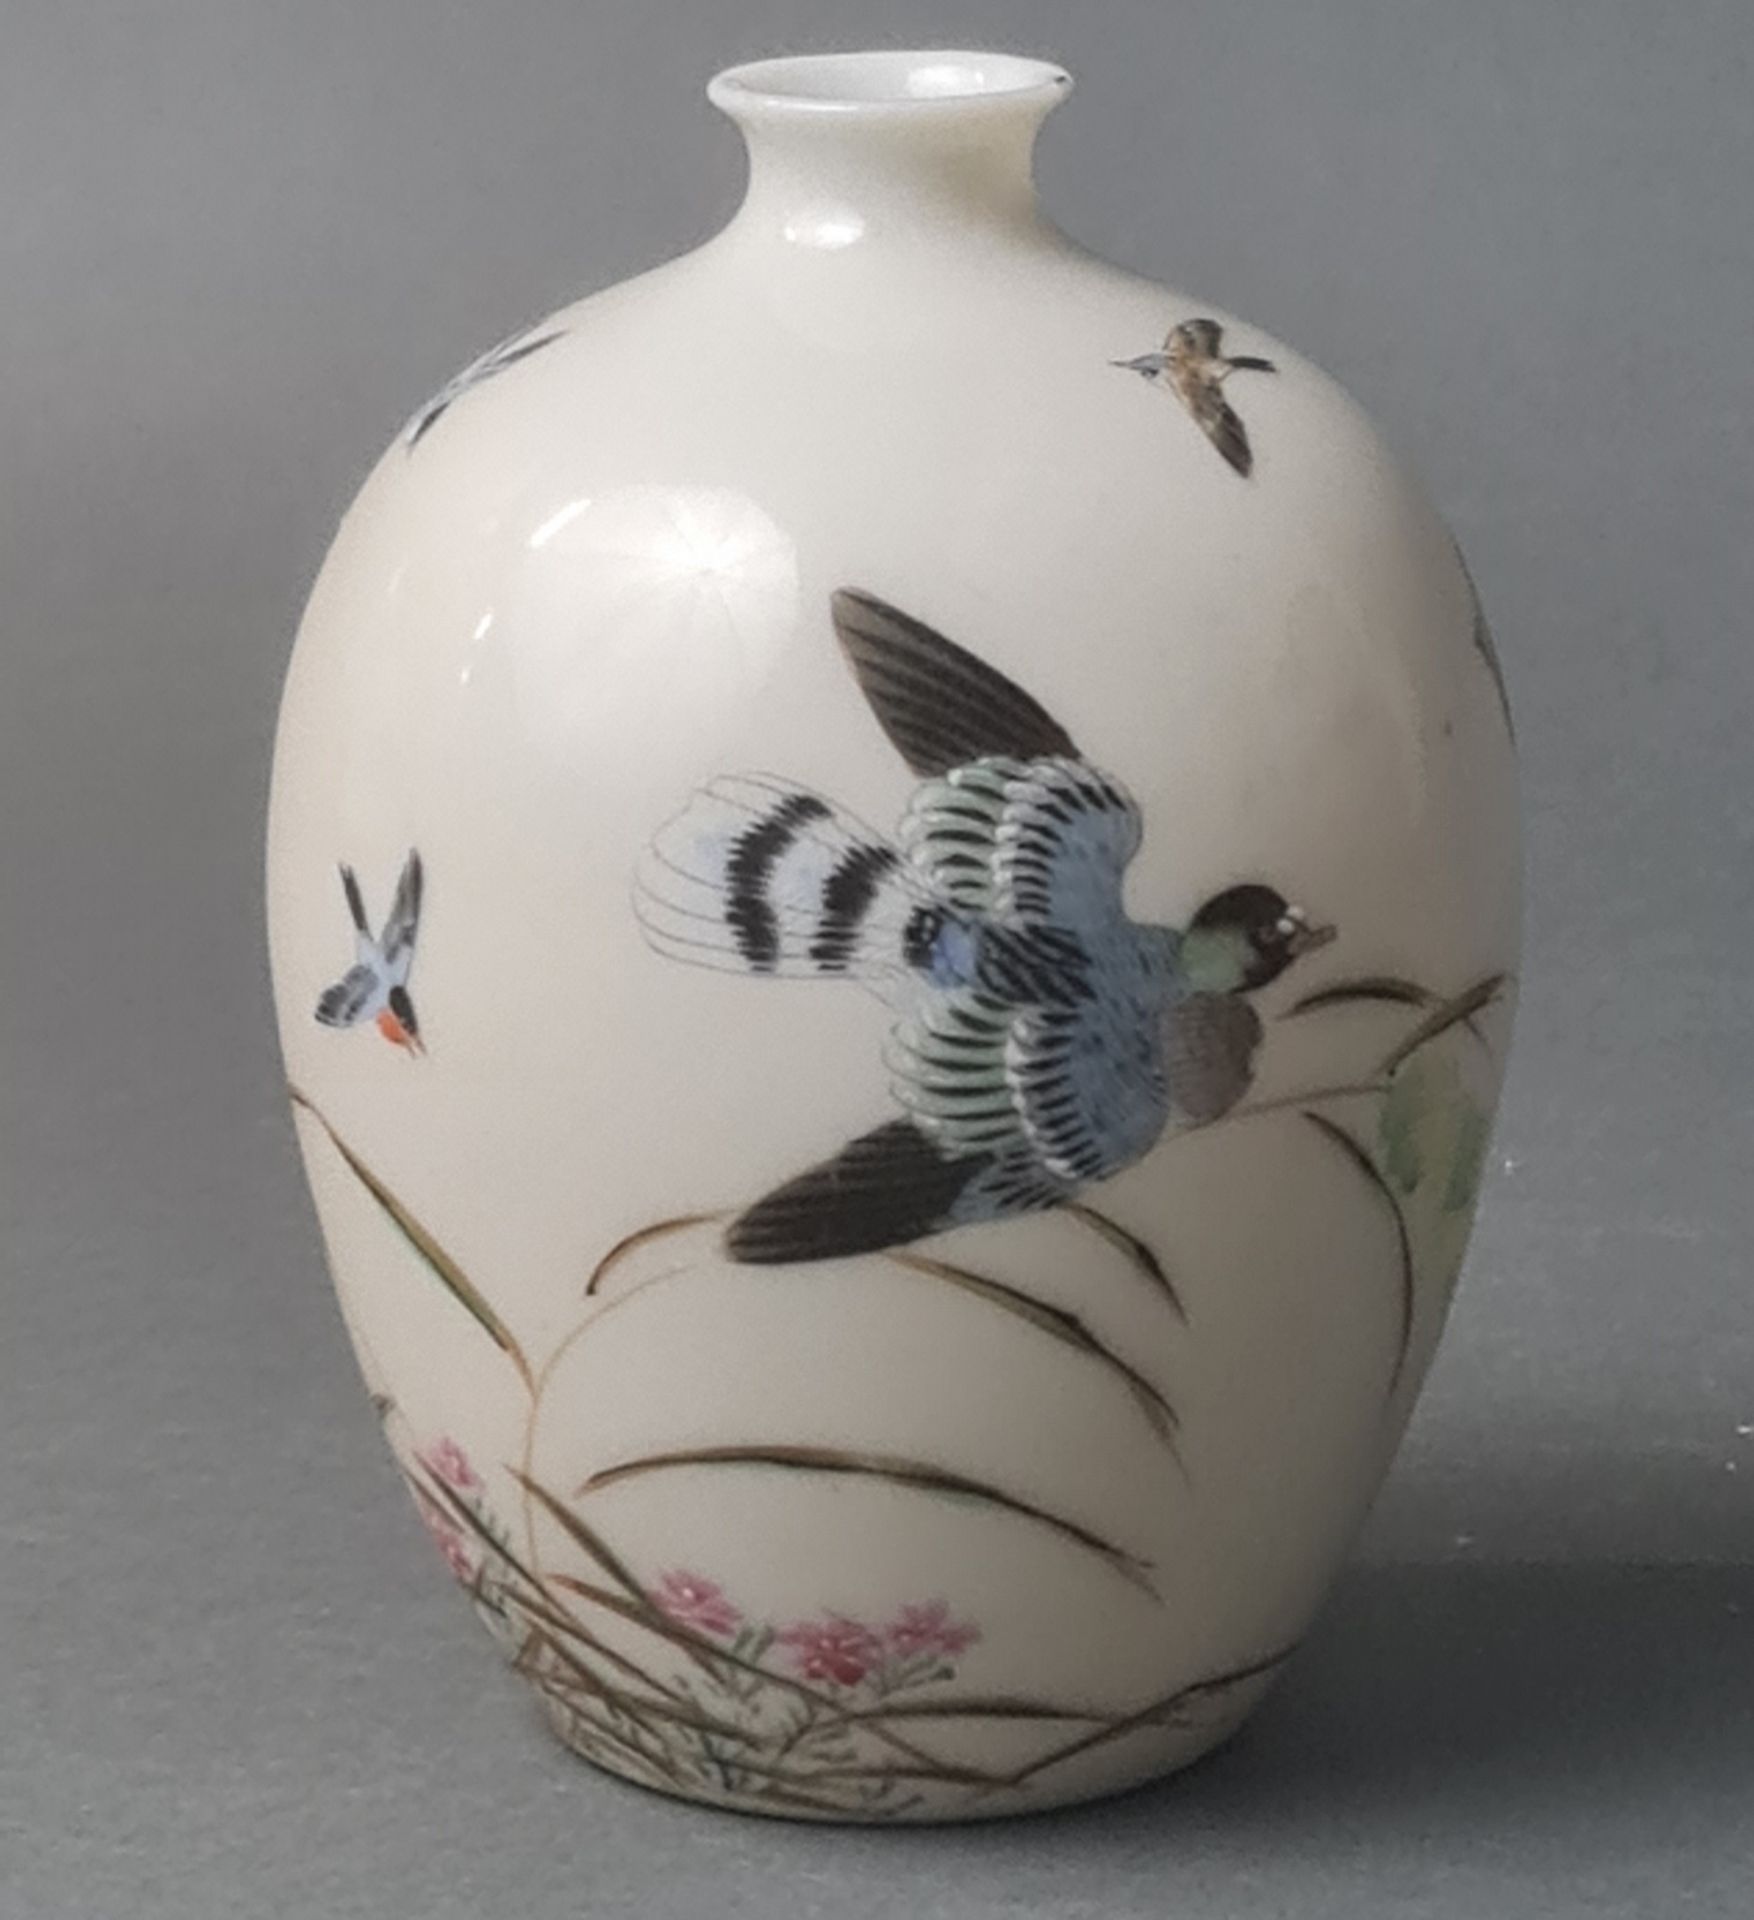 Vase China um 1920, Bodenprägemarke und Malermarke, Porzellan cremfarben mit